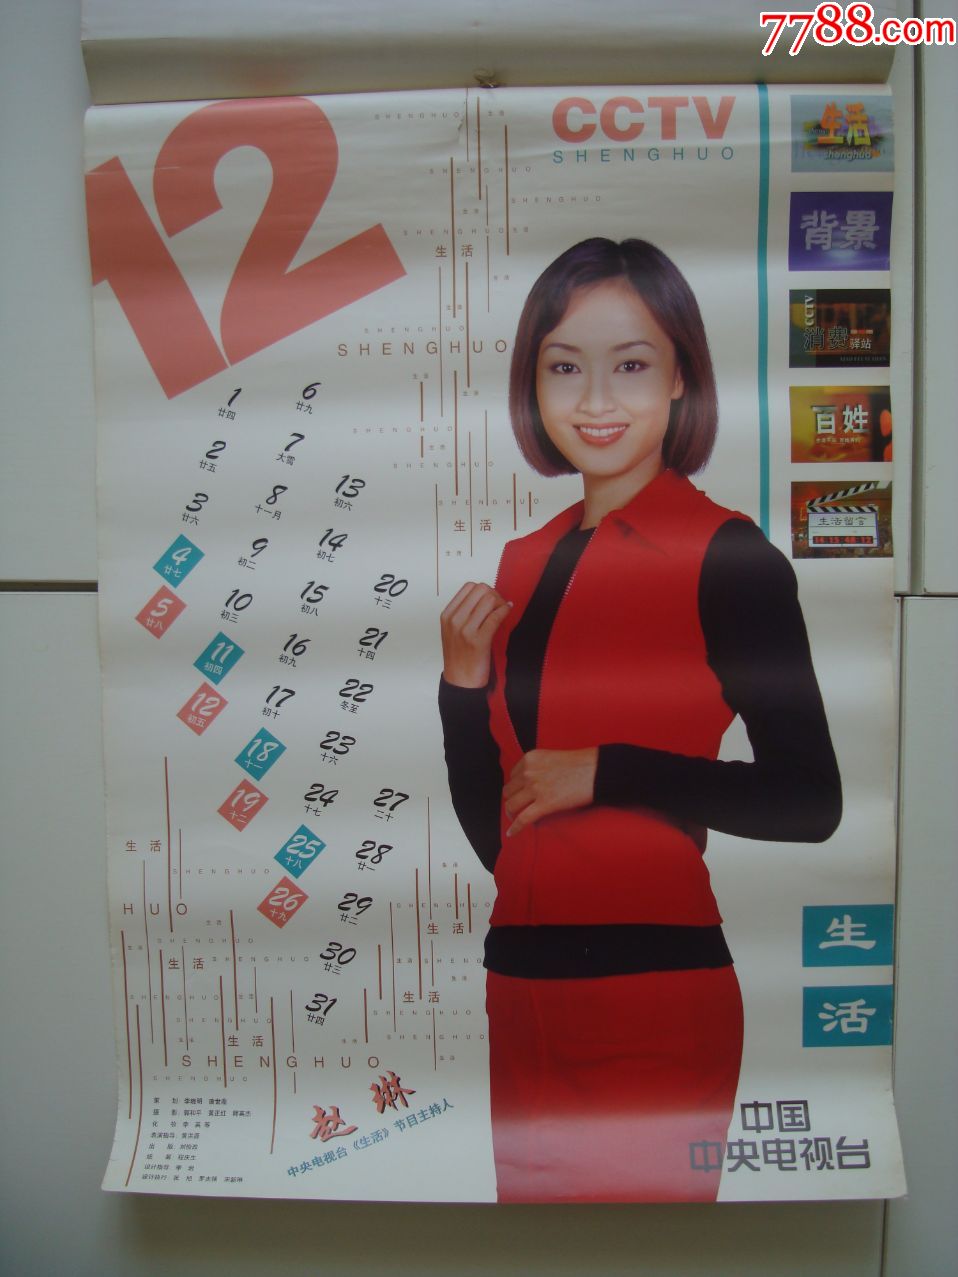 1999年――中国中*电视台cctv主持人挂历――【13张全】